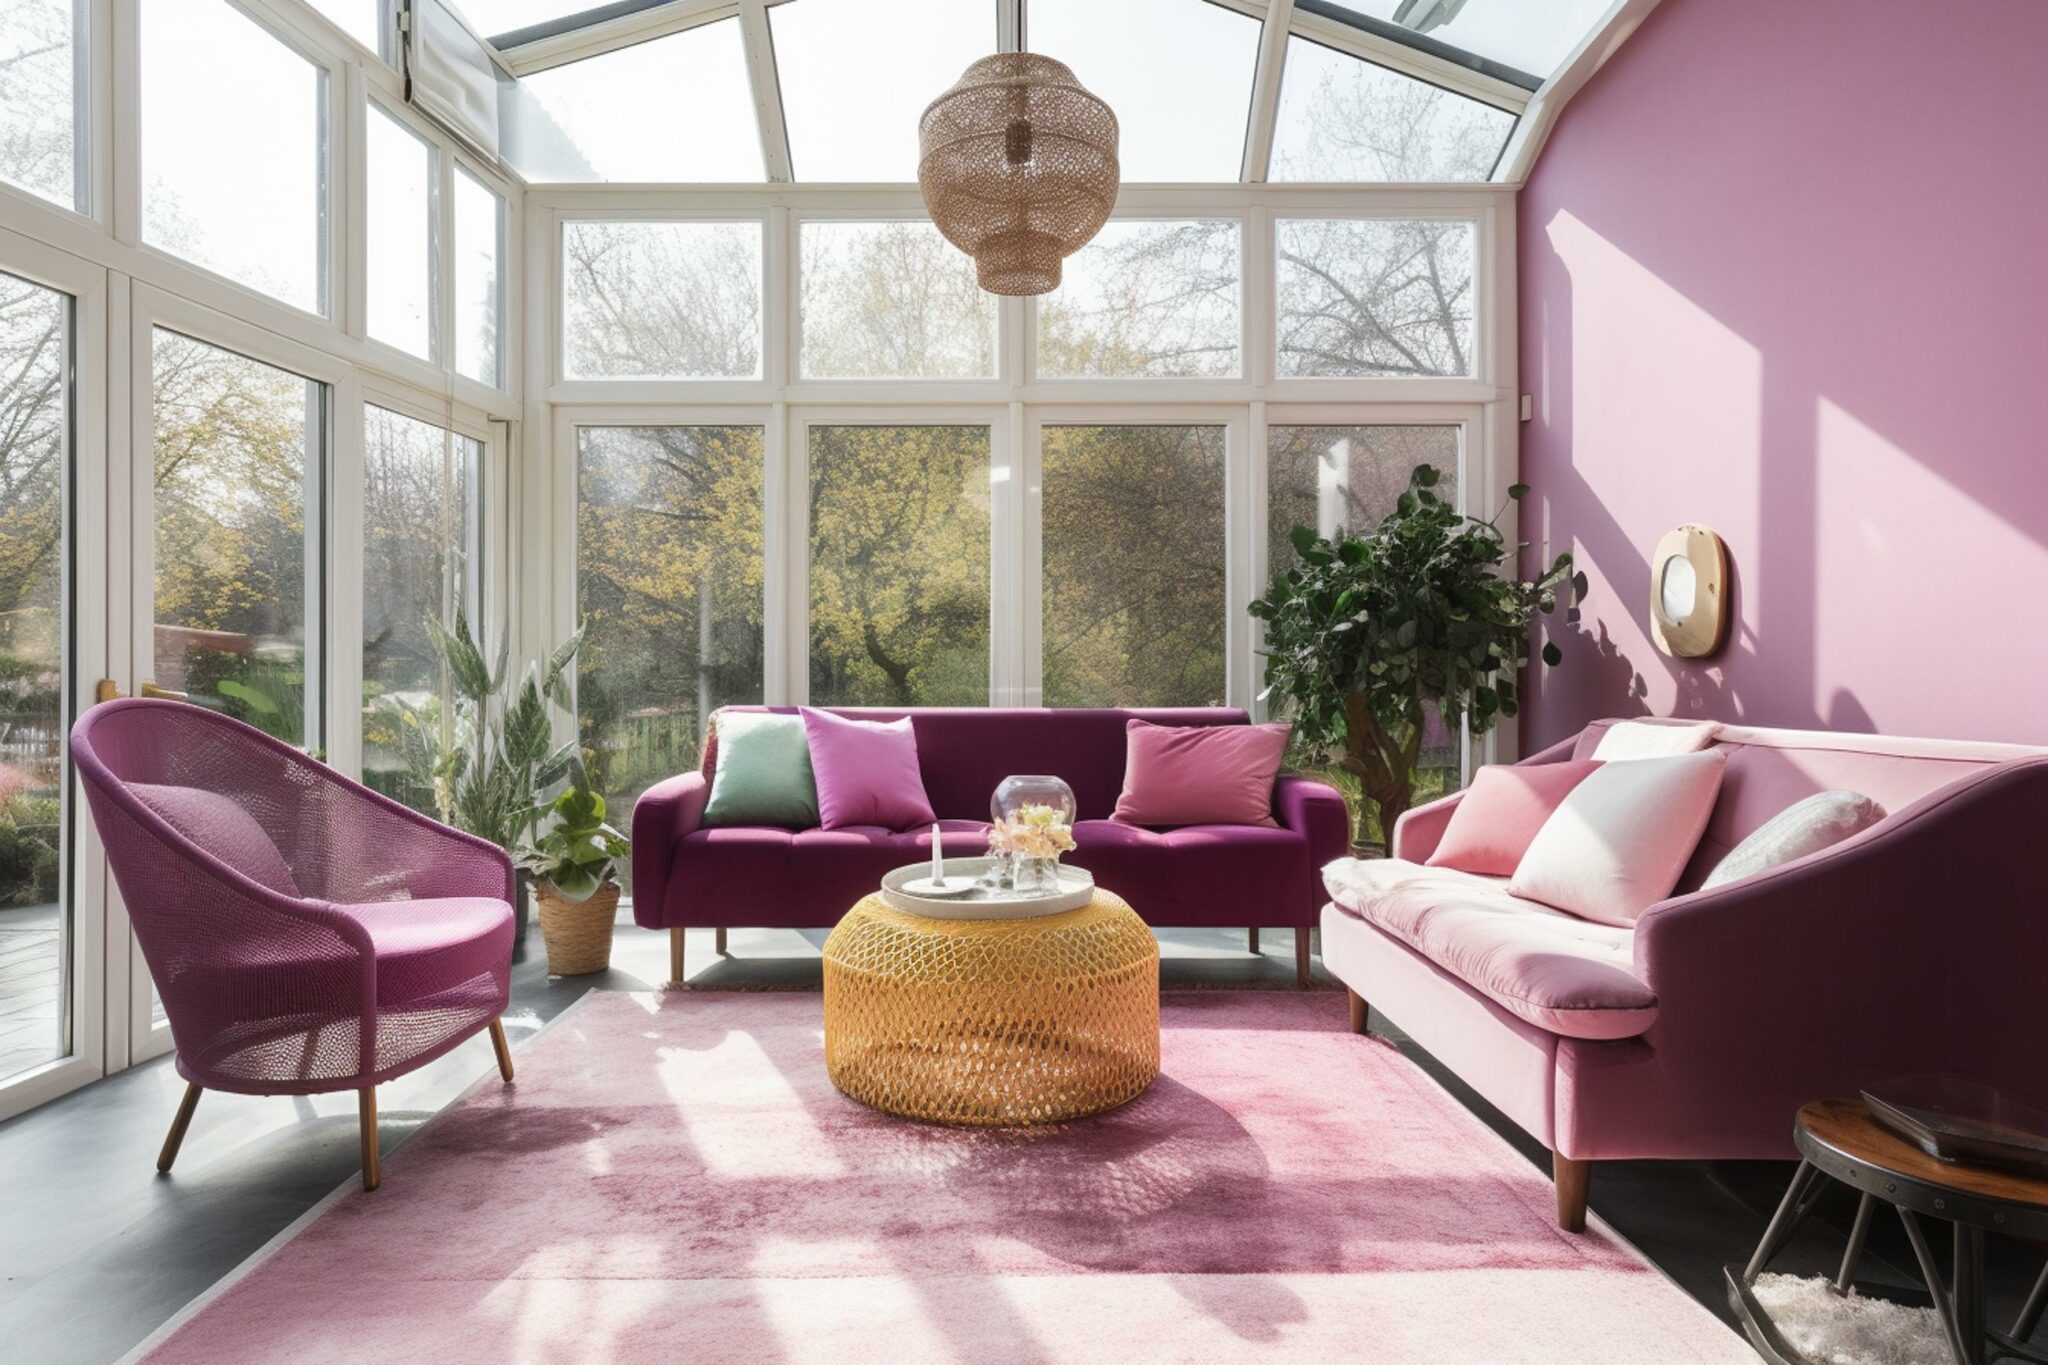 Lavender sunroom with large windows and solarium ceiling